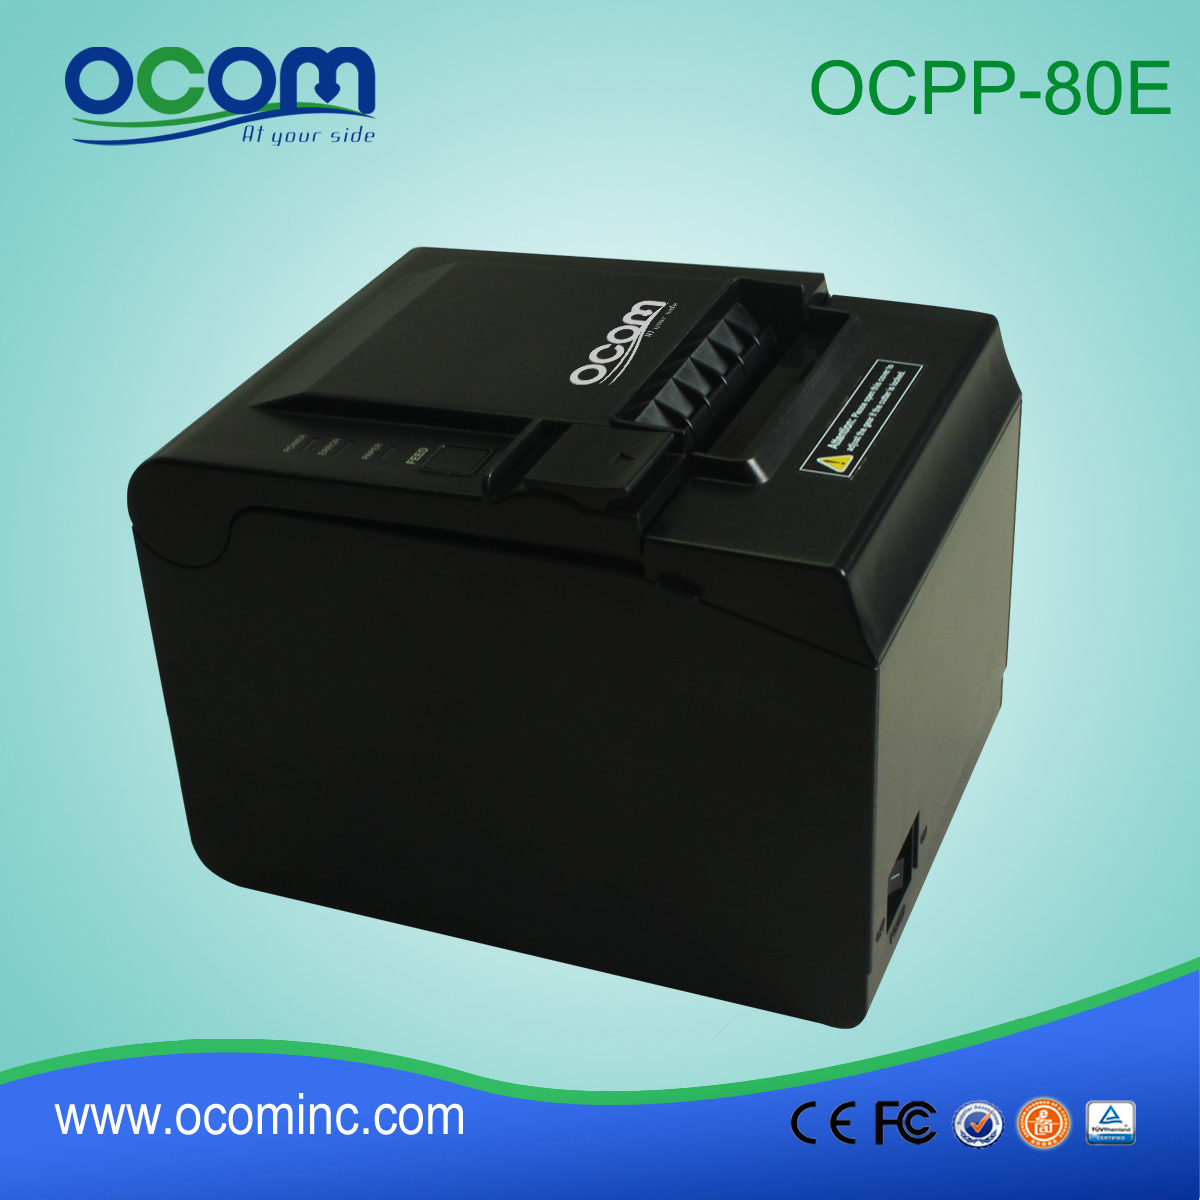 الصين الصانع نقاط البيع الحرارية استلام الطابعة (OCPP-80E)